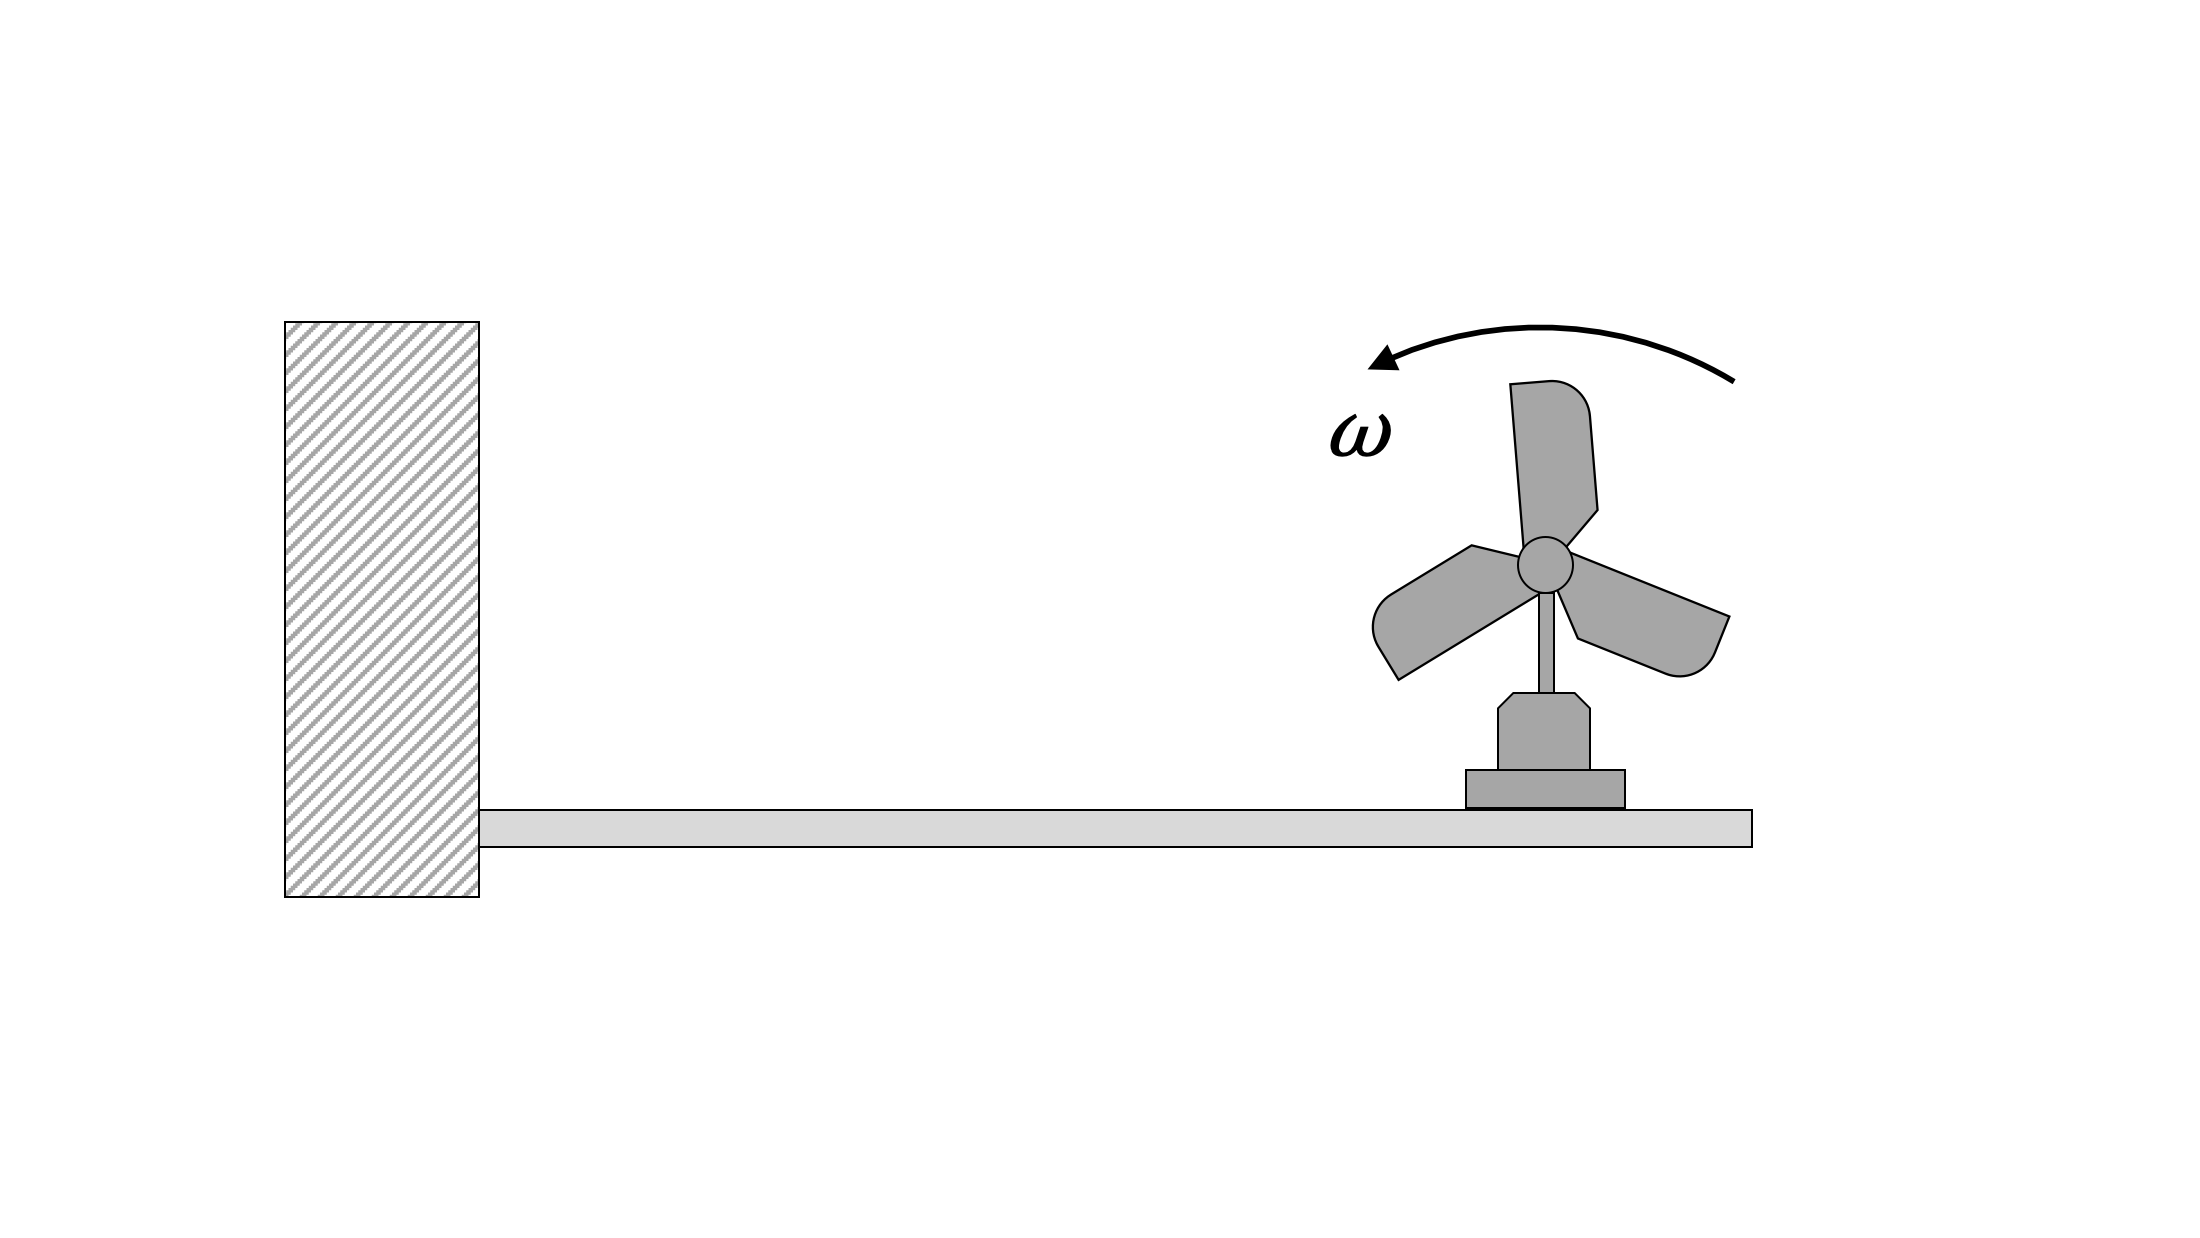 Una viga horizontal que no está en contacto con el suelo se fija a una pared en su extremo izquierdo. La viga sostiene un ventilador de tres palas, que gira en sentido contrario a las agujas del reloj a velocidad angular omega, montado en un soporte en su extremo derecho.